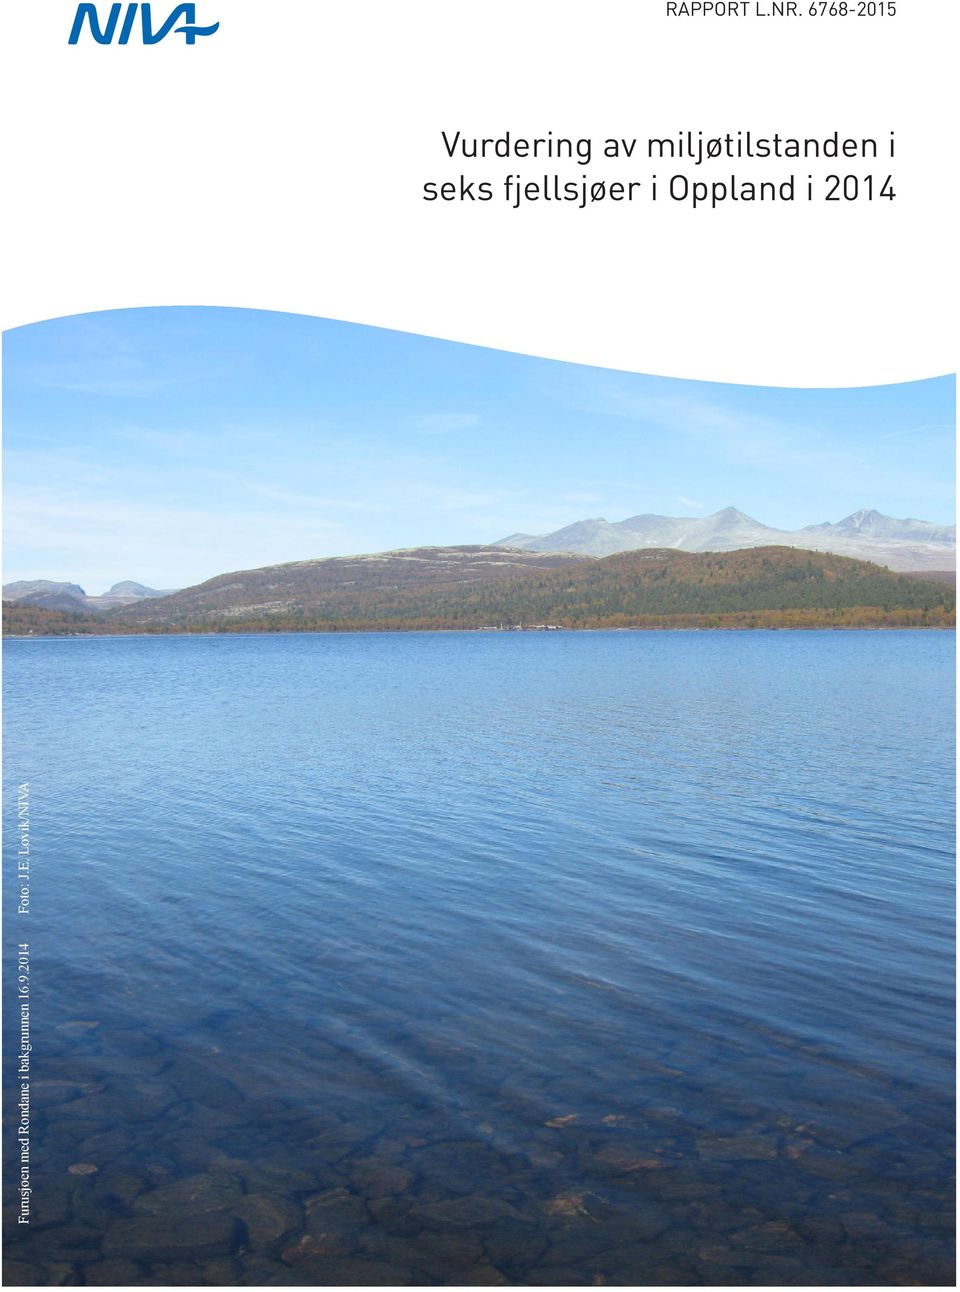 i seks fjellsjøer i Oppland i 2014